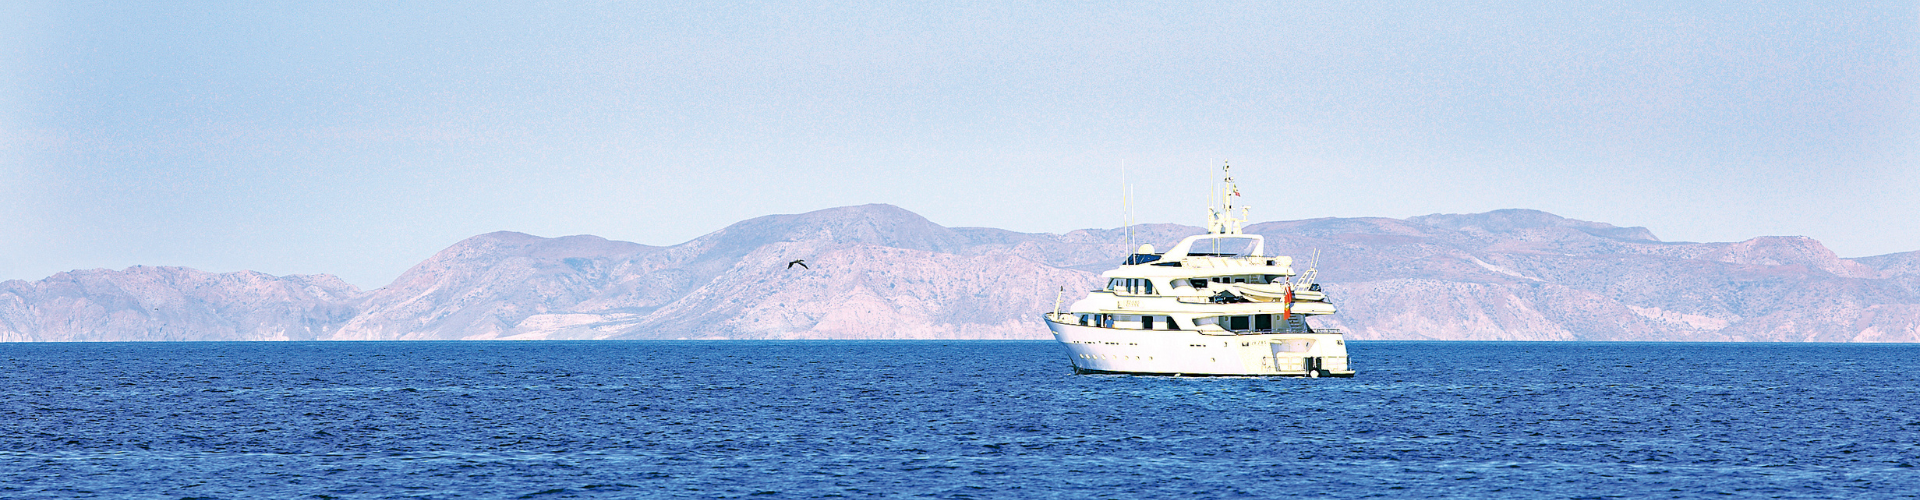 Loreto Bay B.C.S - Loreto, Baja California Sur - 